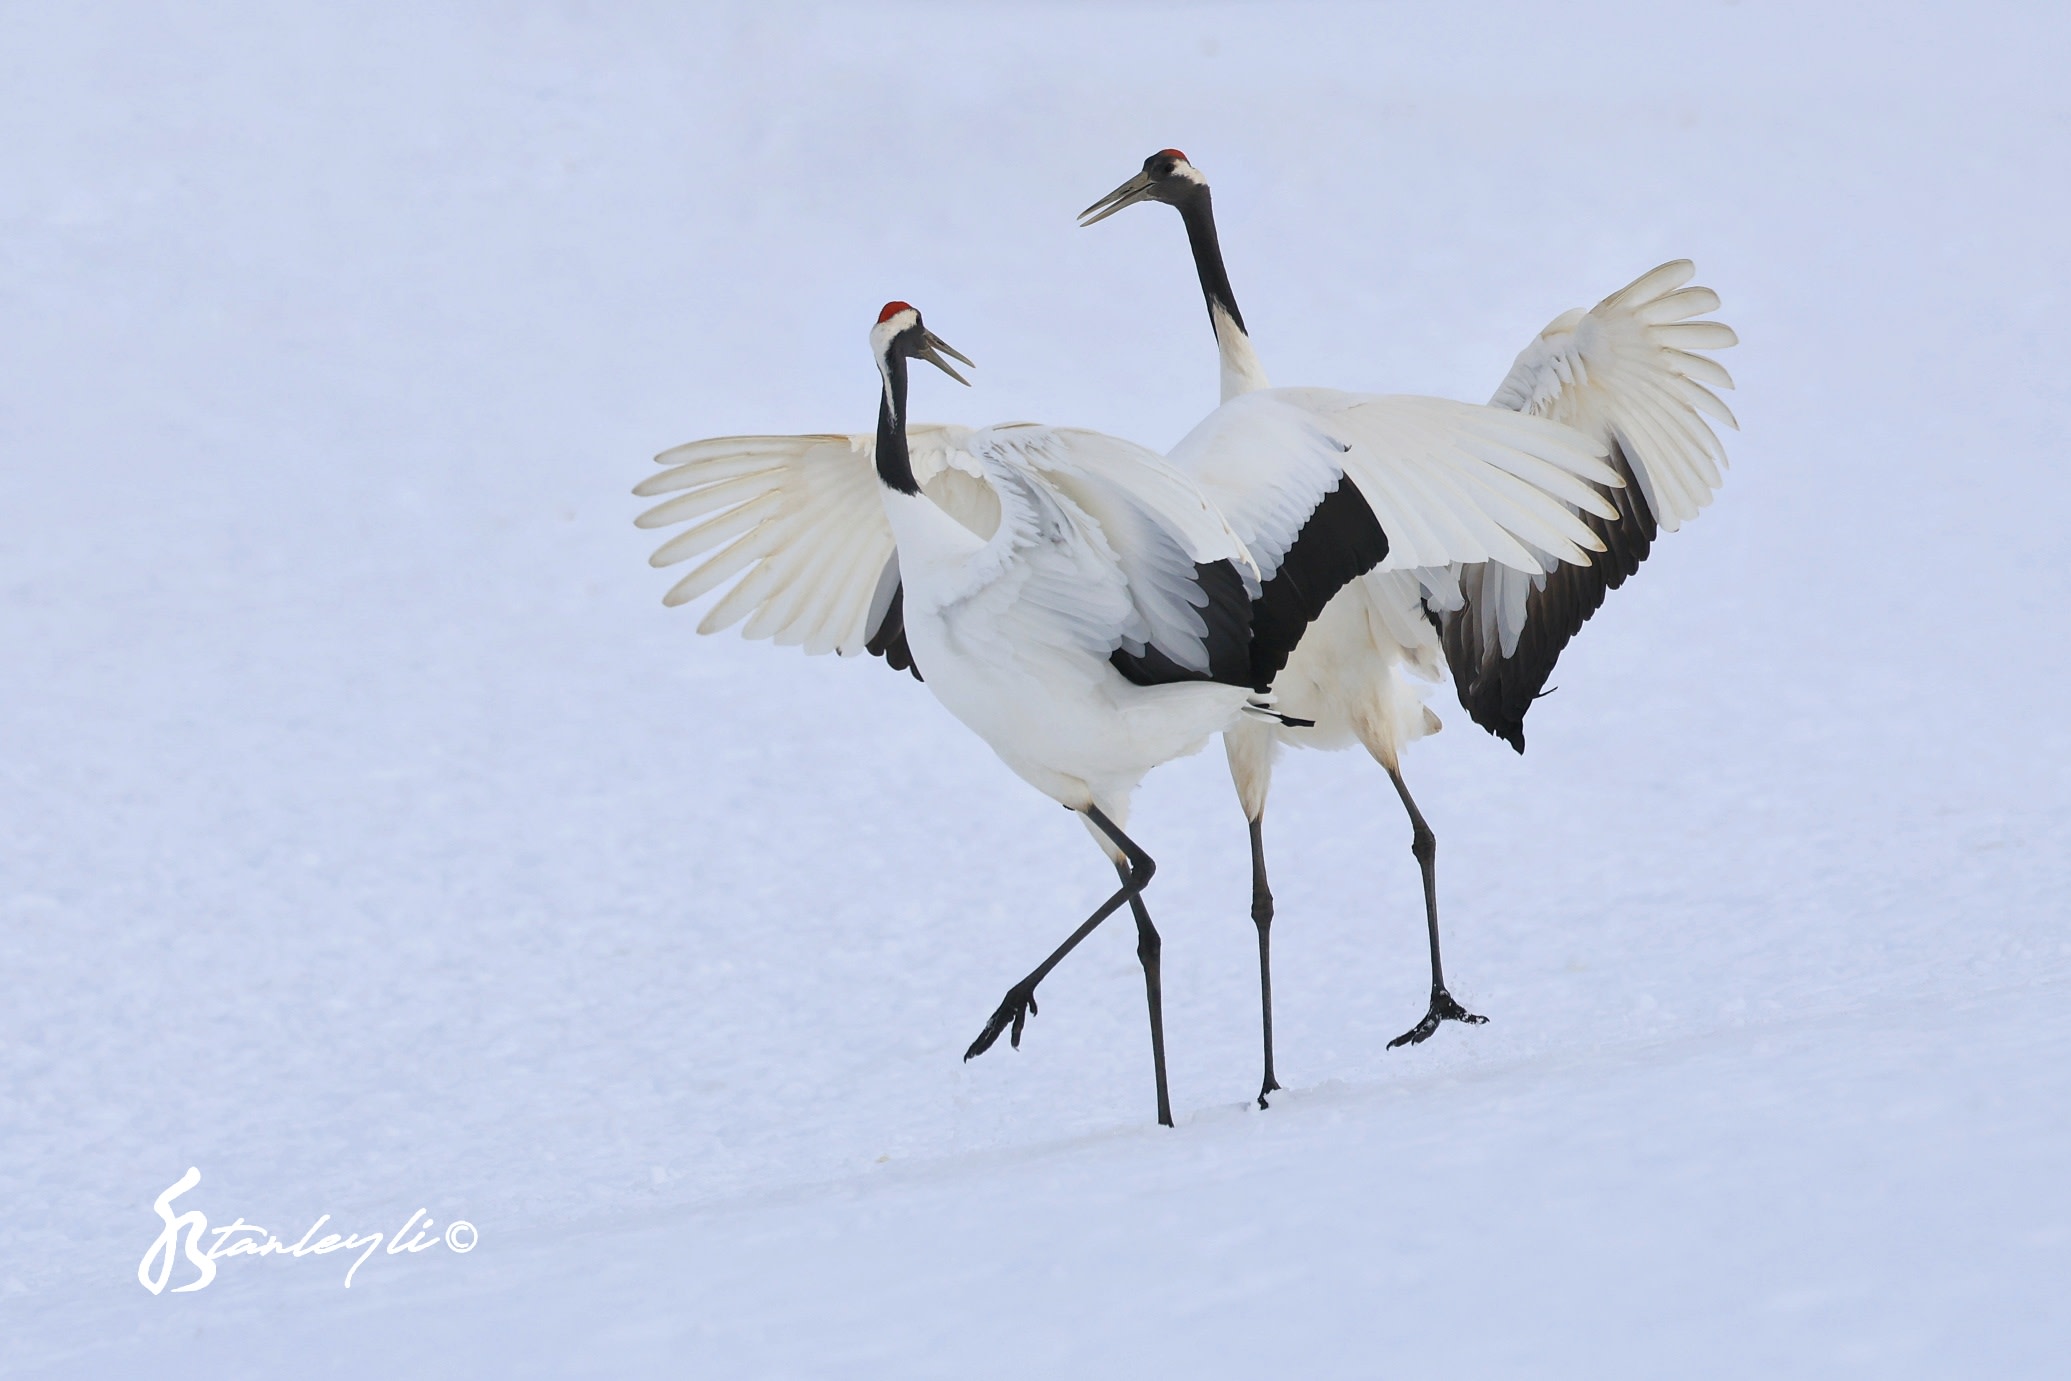 Two Red Crowned Cranes dance in Tsurui, Hokkaido. ©️ Stanley Li